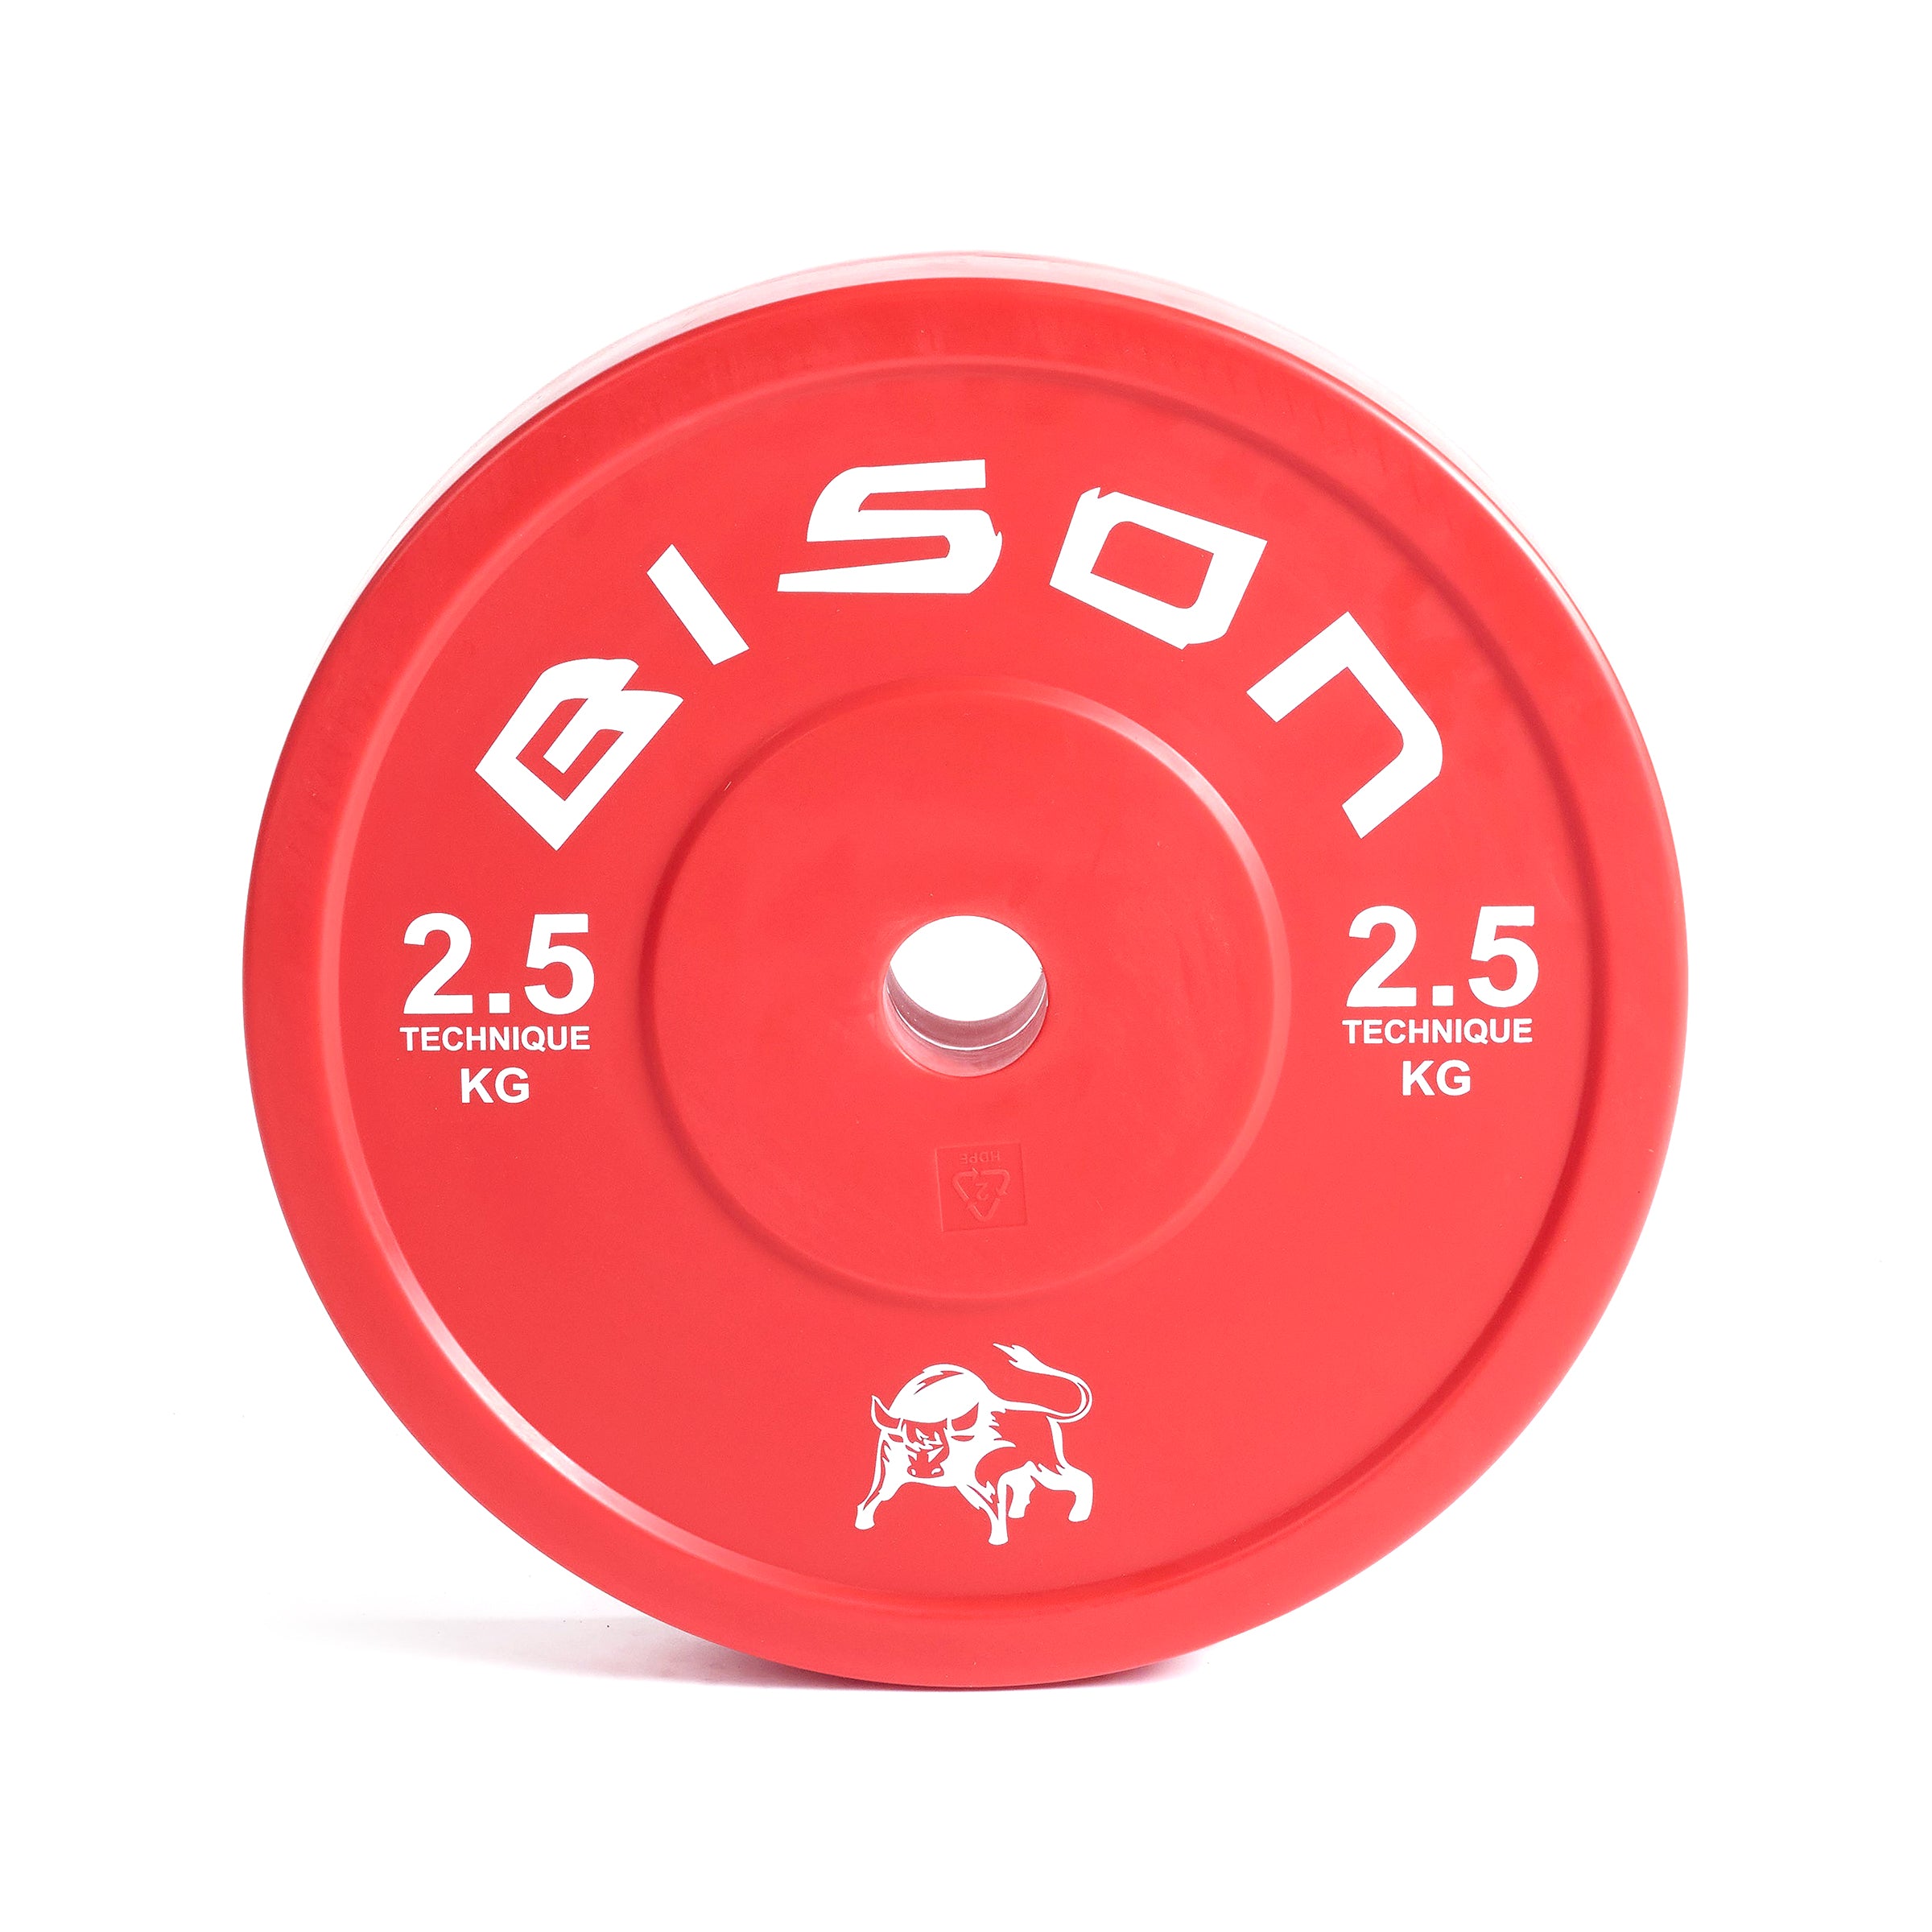 Bison 2.5 kg Premium Technique Plates - Wolverson Fitness